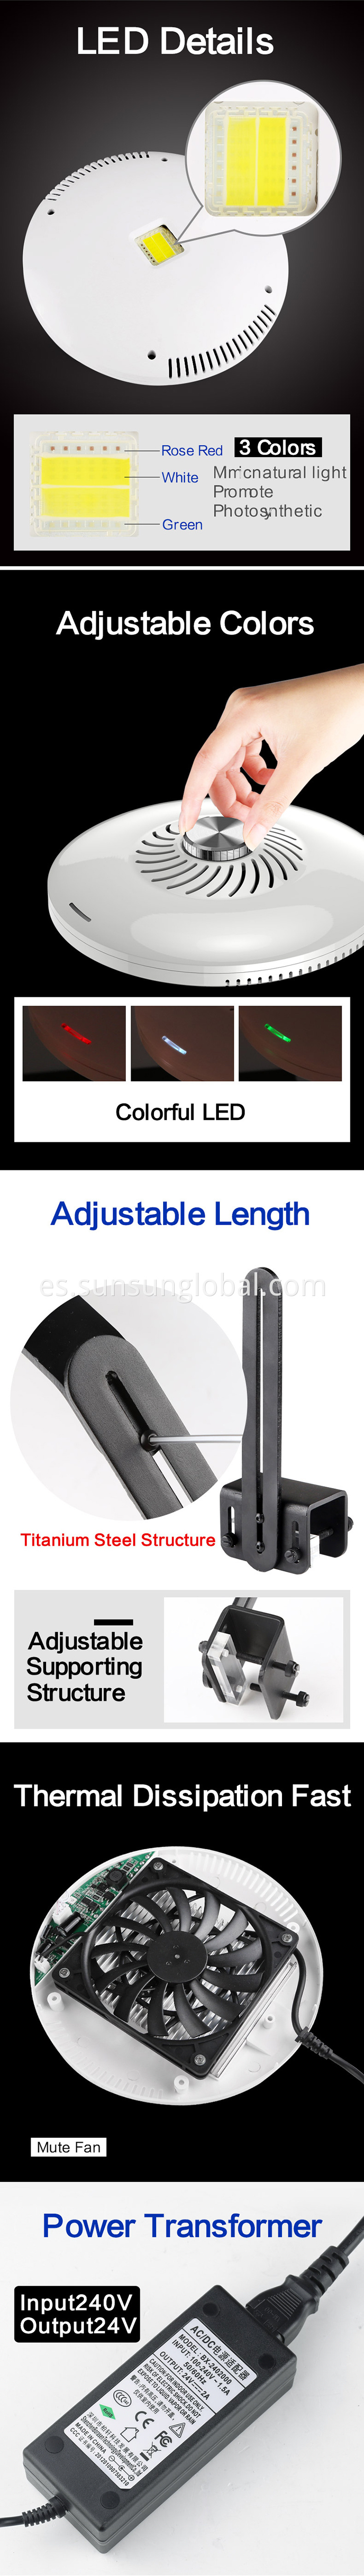 Buena calidad LED CORAL CORAL CORAL LID LED LED